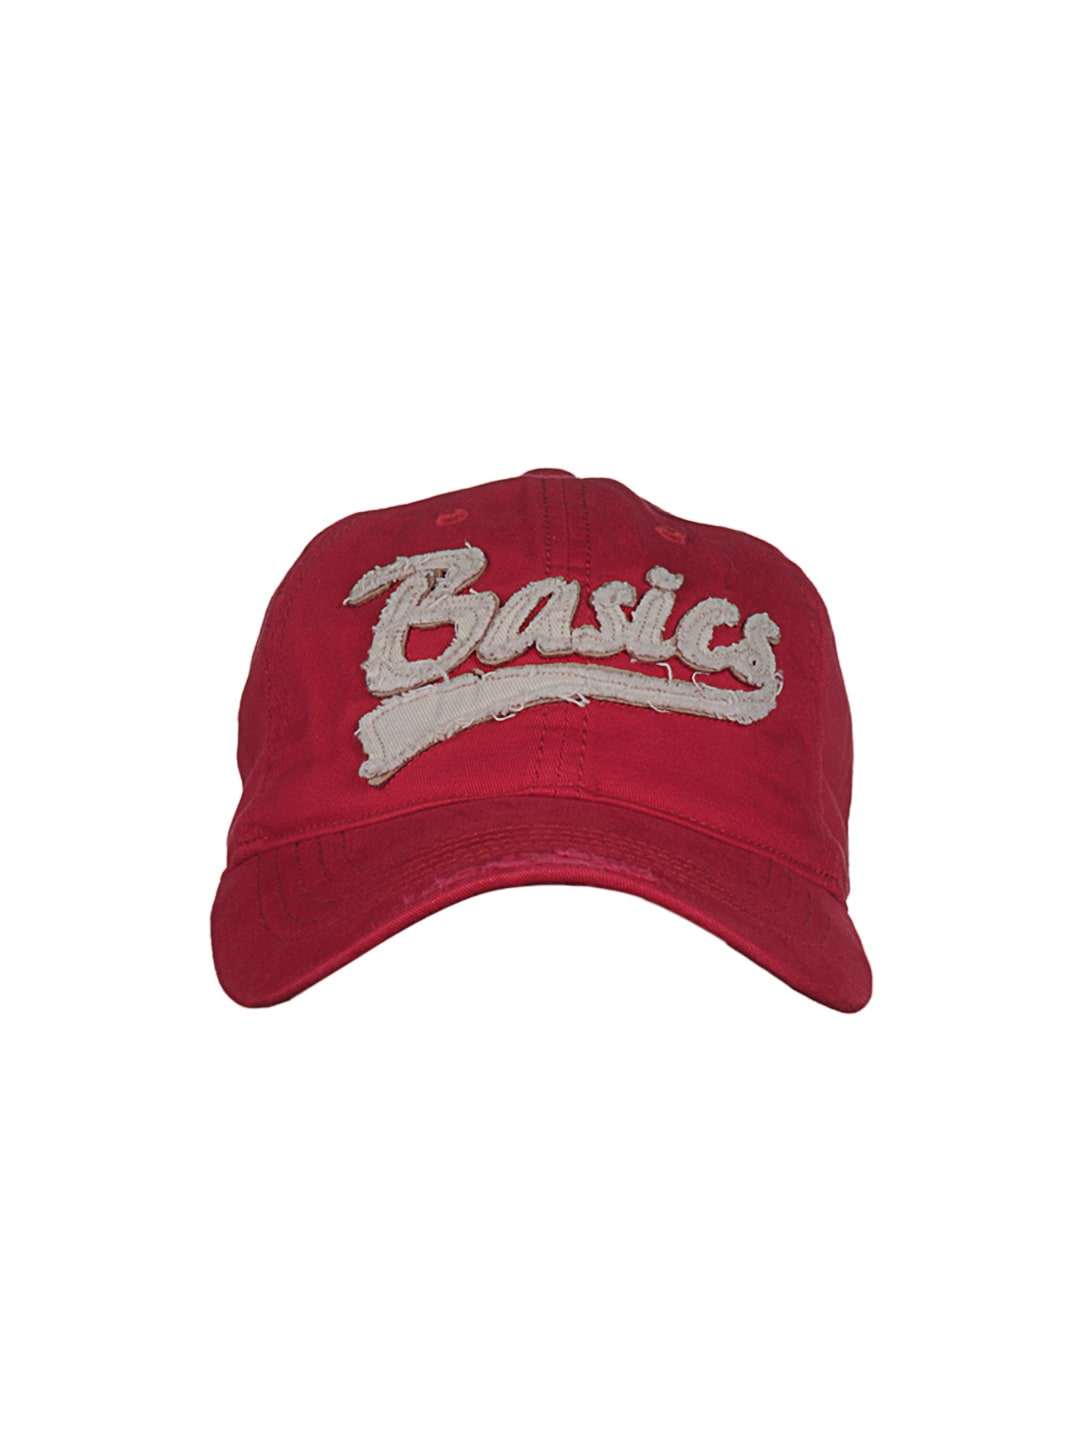 Basics Men Red Cap